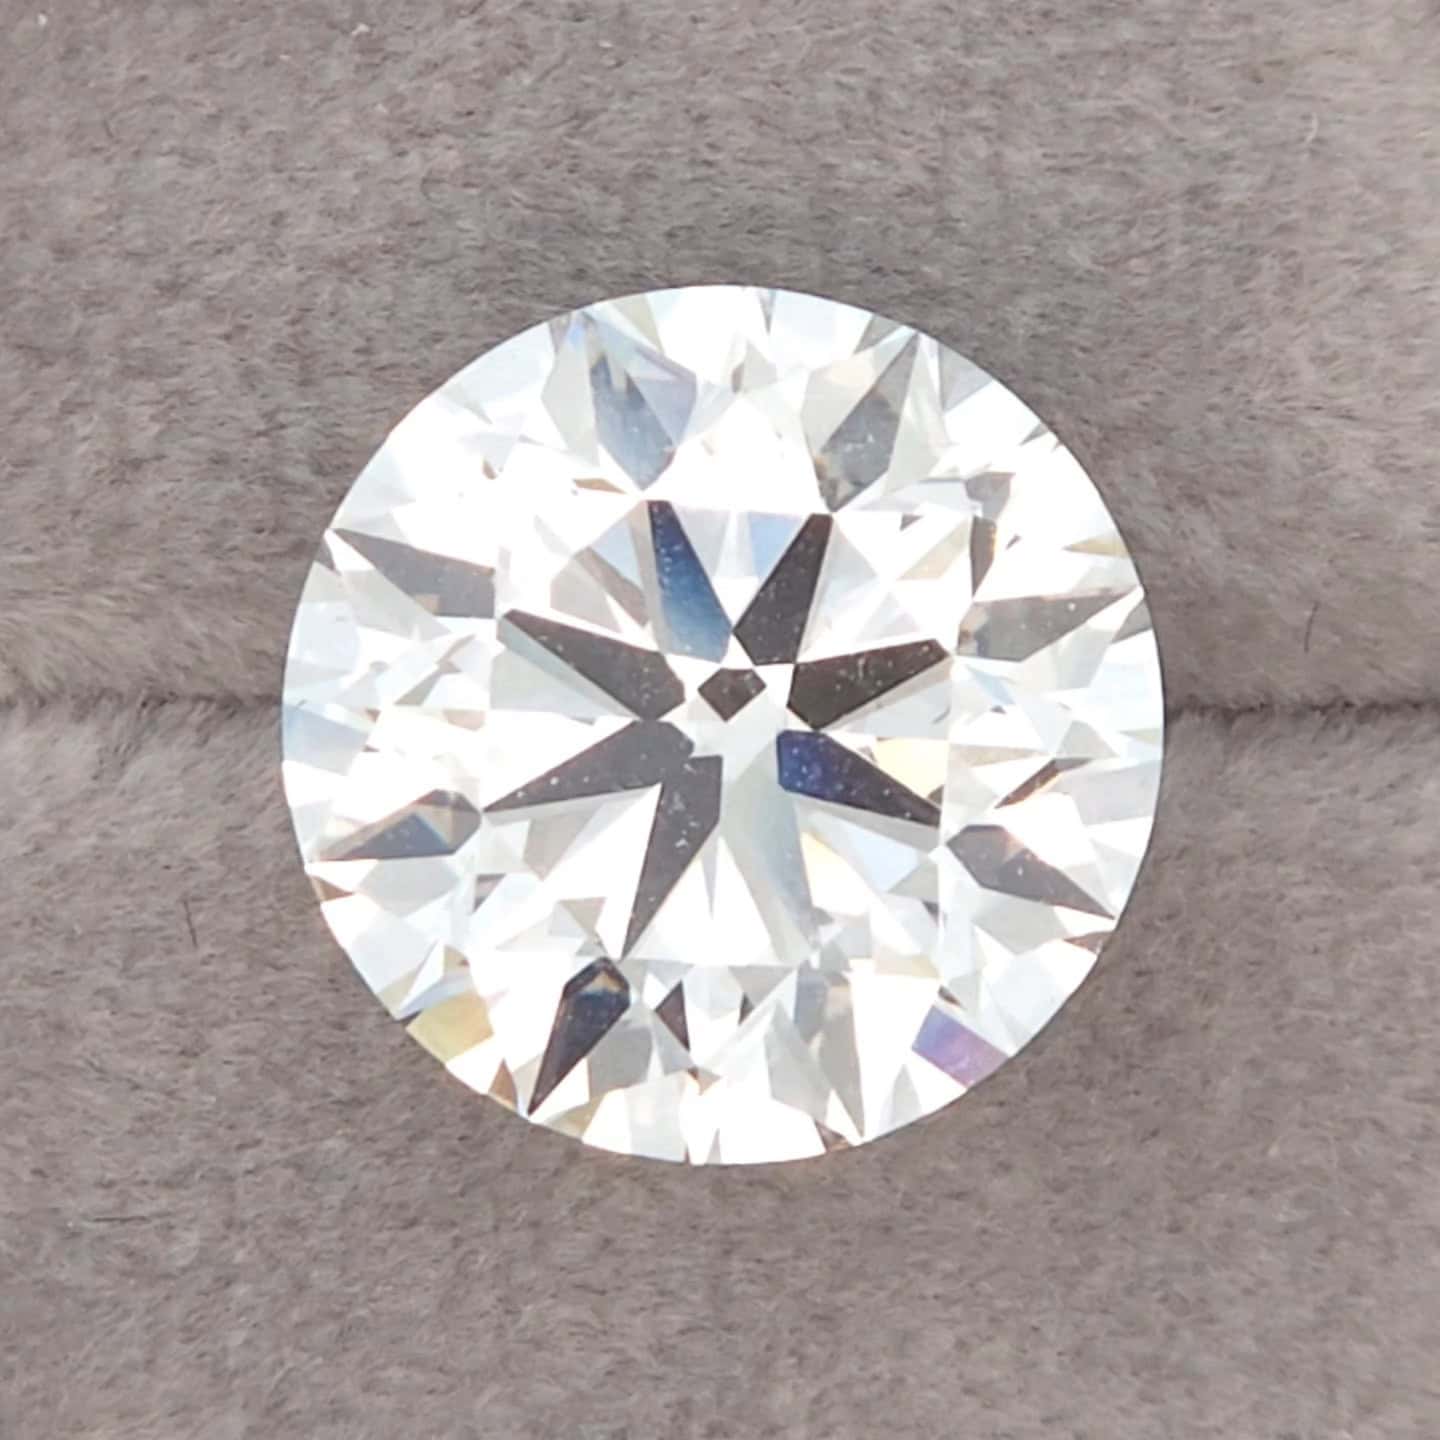 Lowest Price Eco Diamond – 5.27 ct Round D-VVS2 IGI LG589312248 - Ideal cut, Excellent symmetry, Excellent polish.